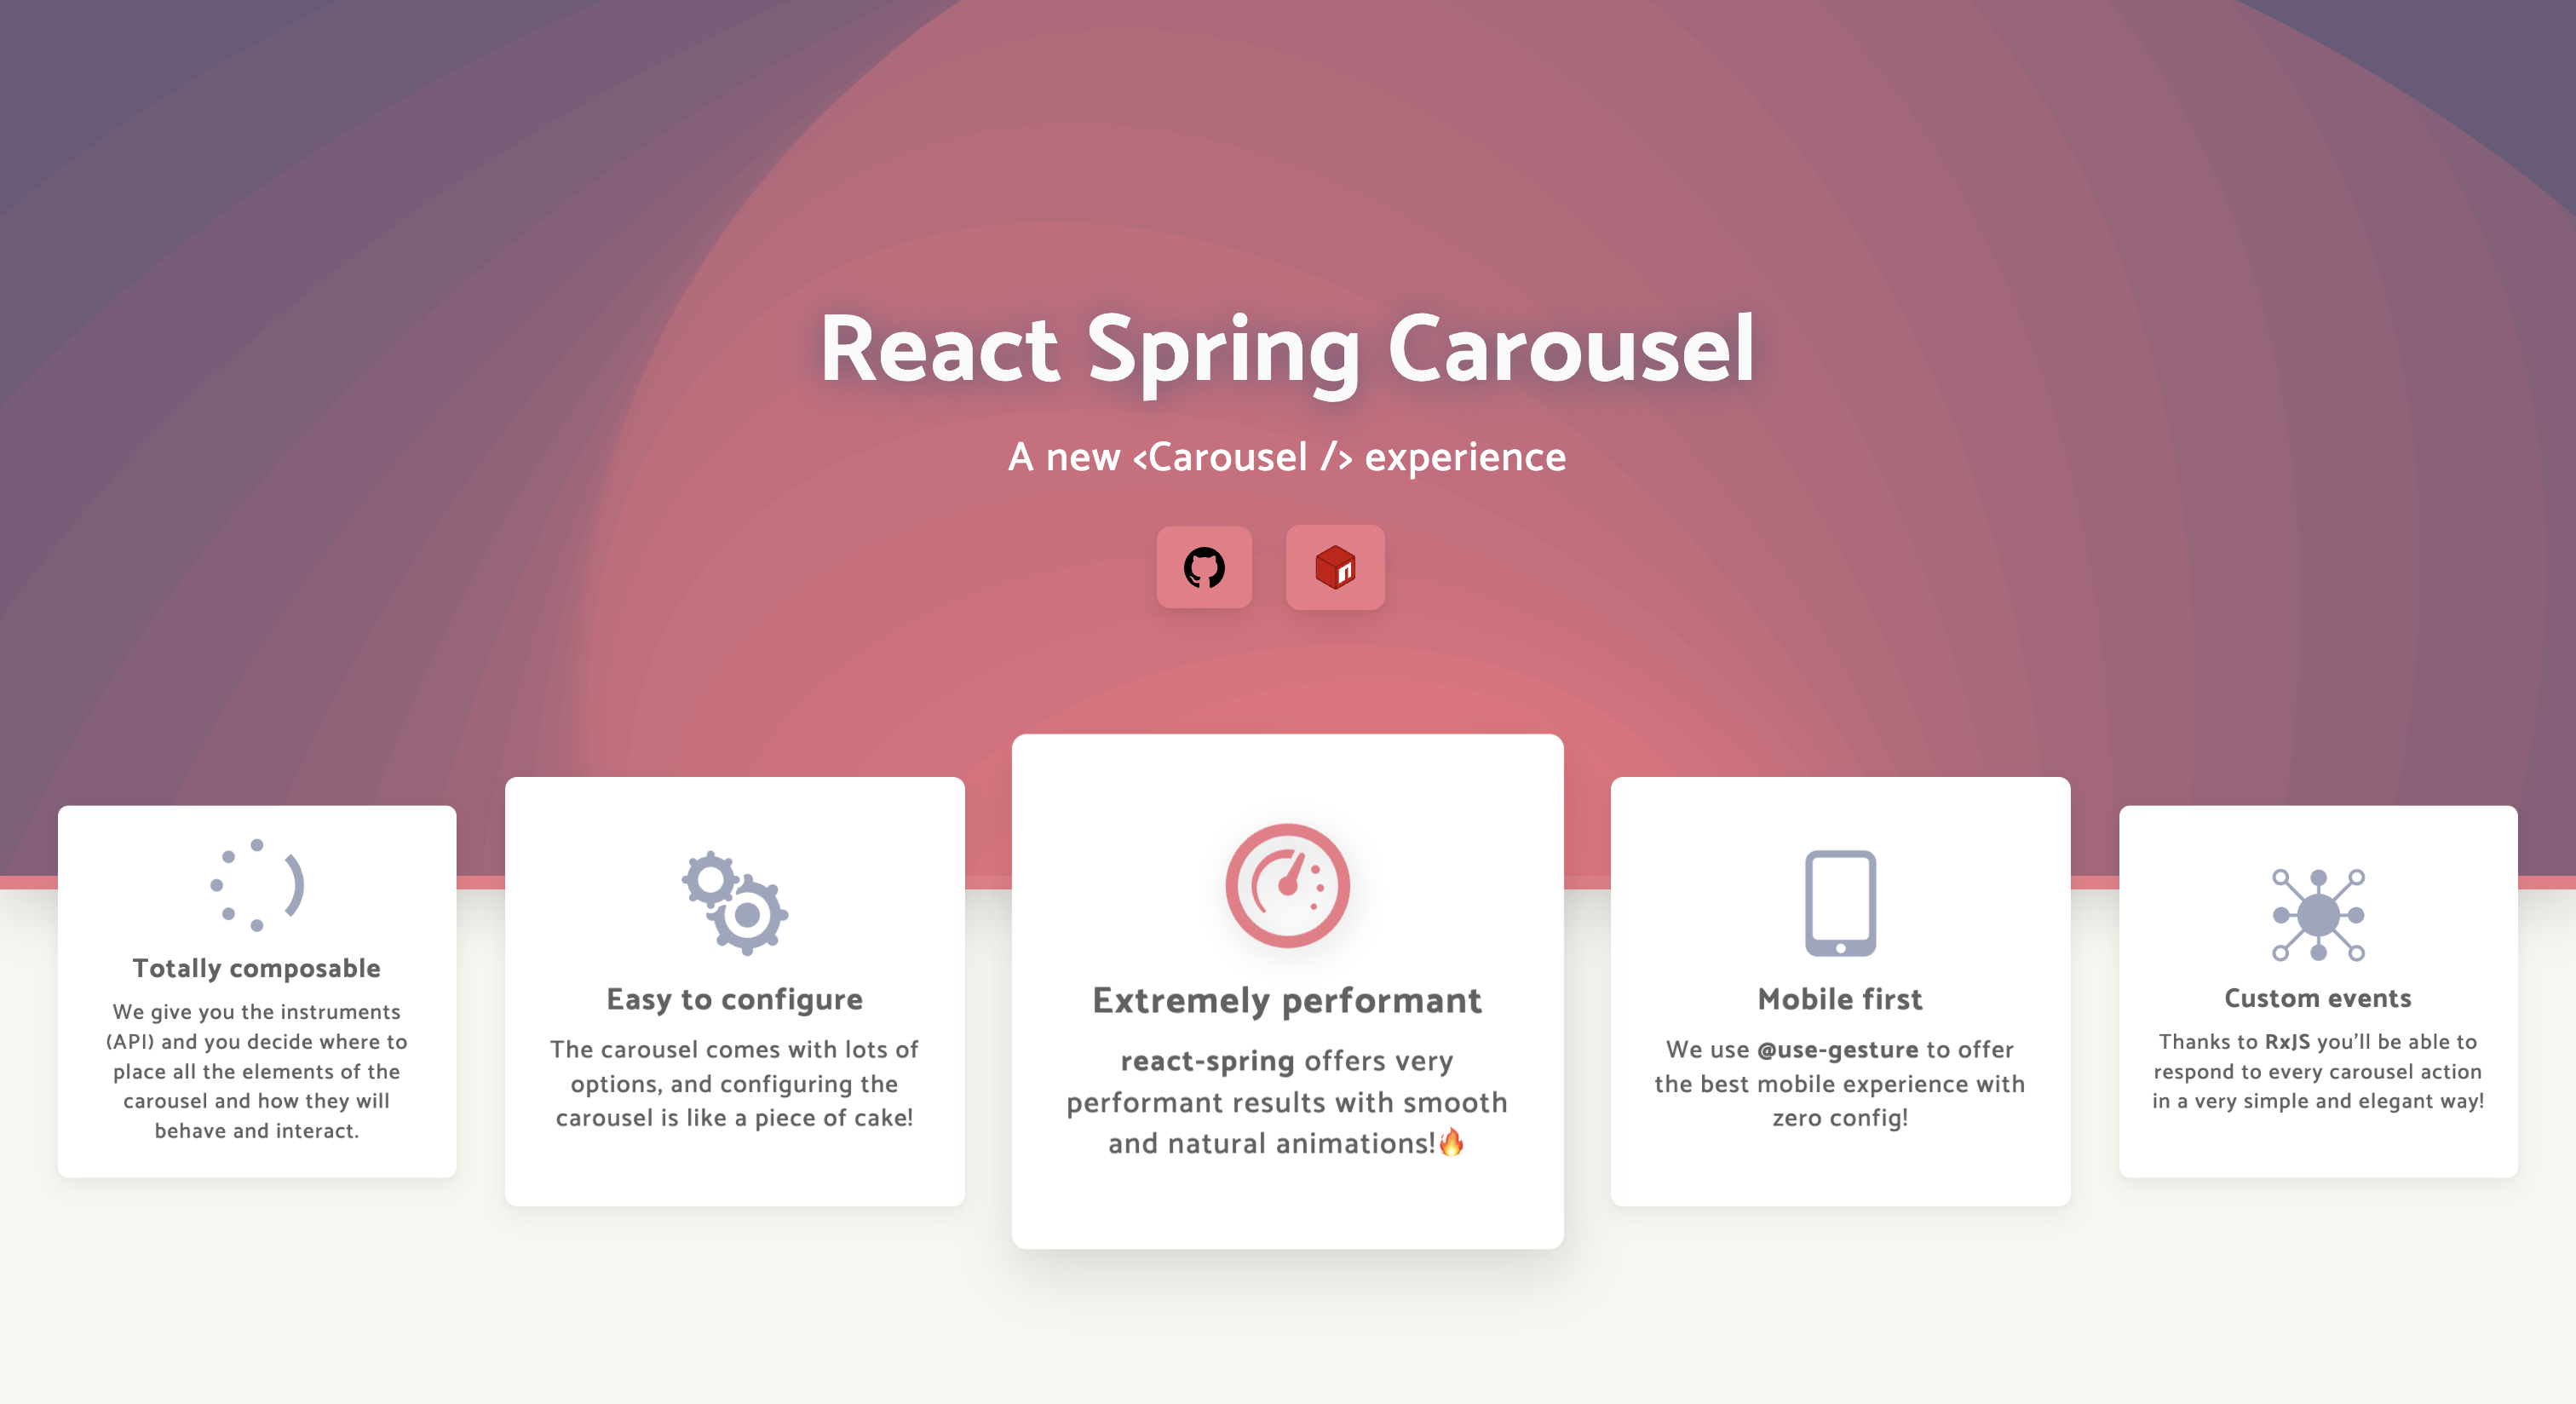 Visit React Spring Carousel website